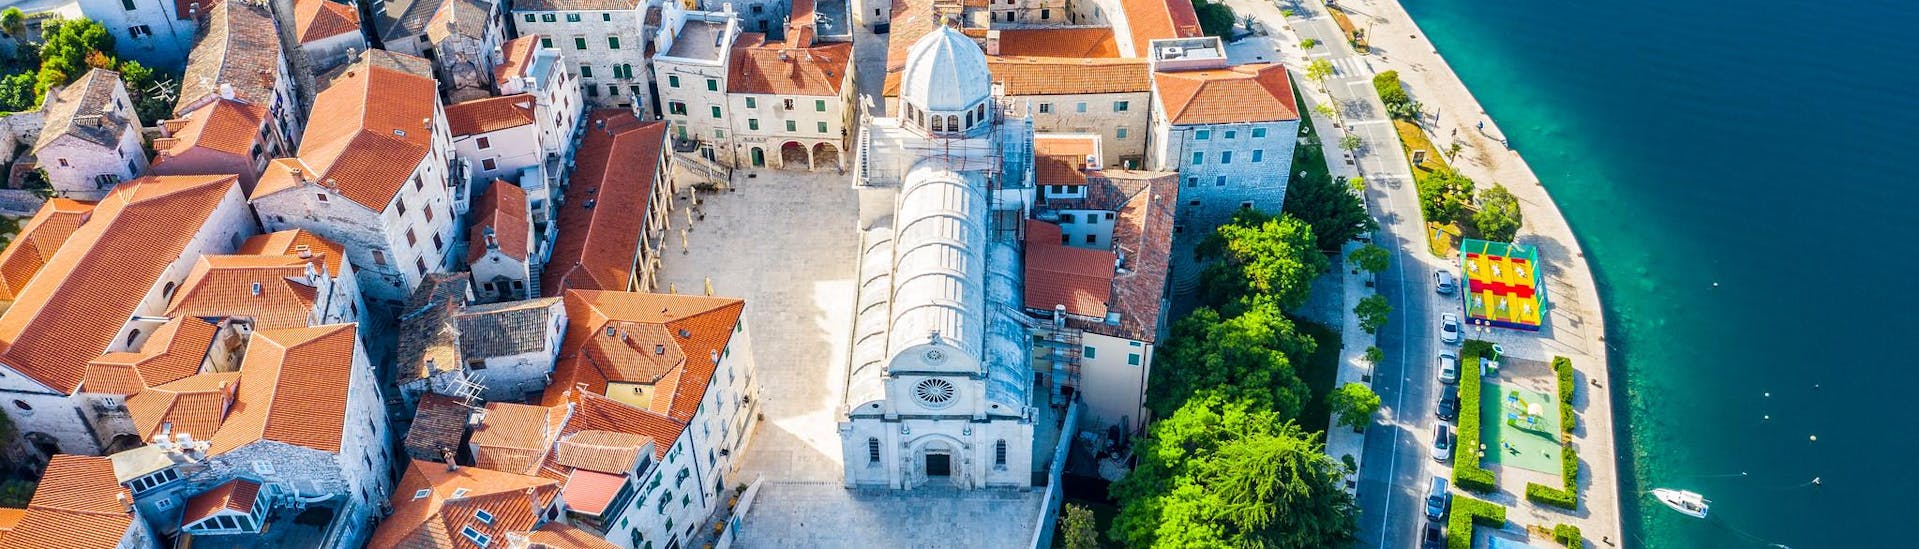 Luchtfoto van de stad Sibenik in Kroatië.